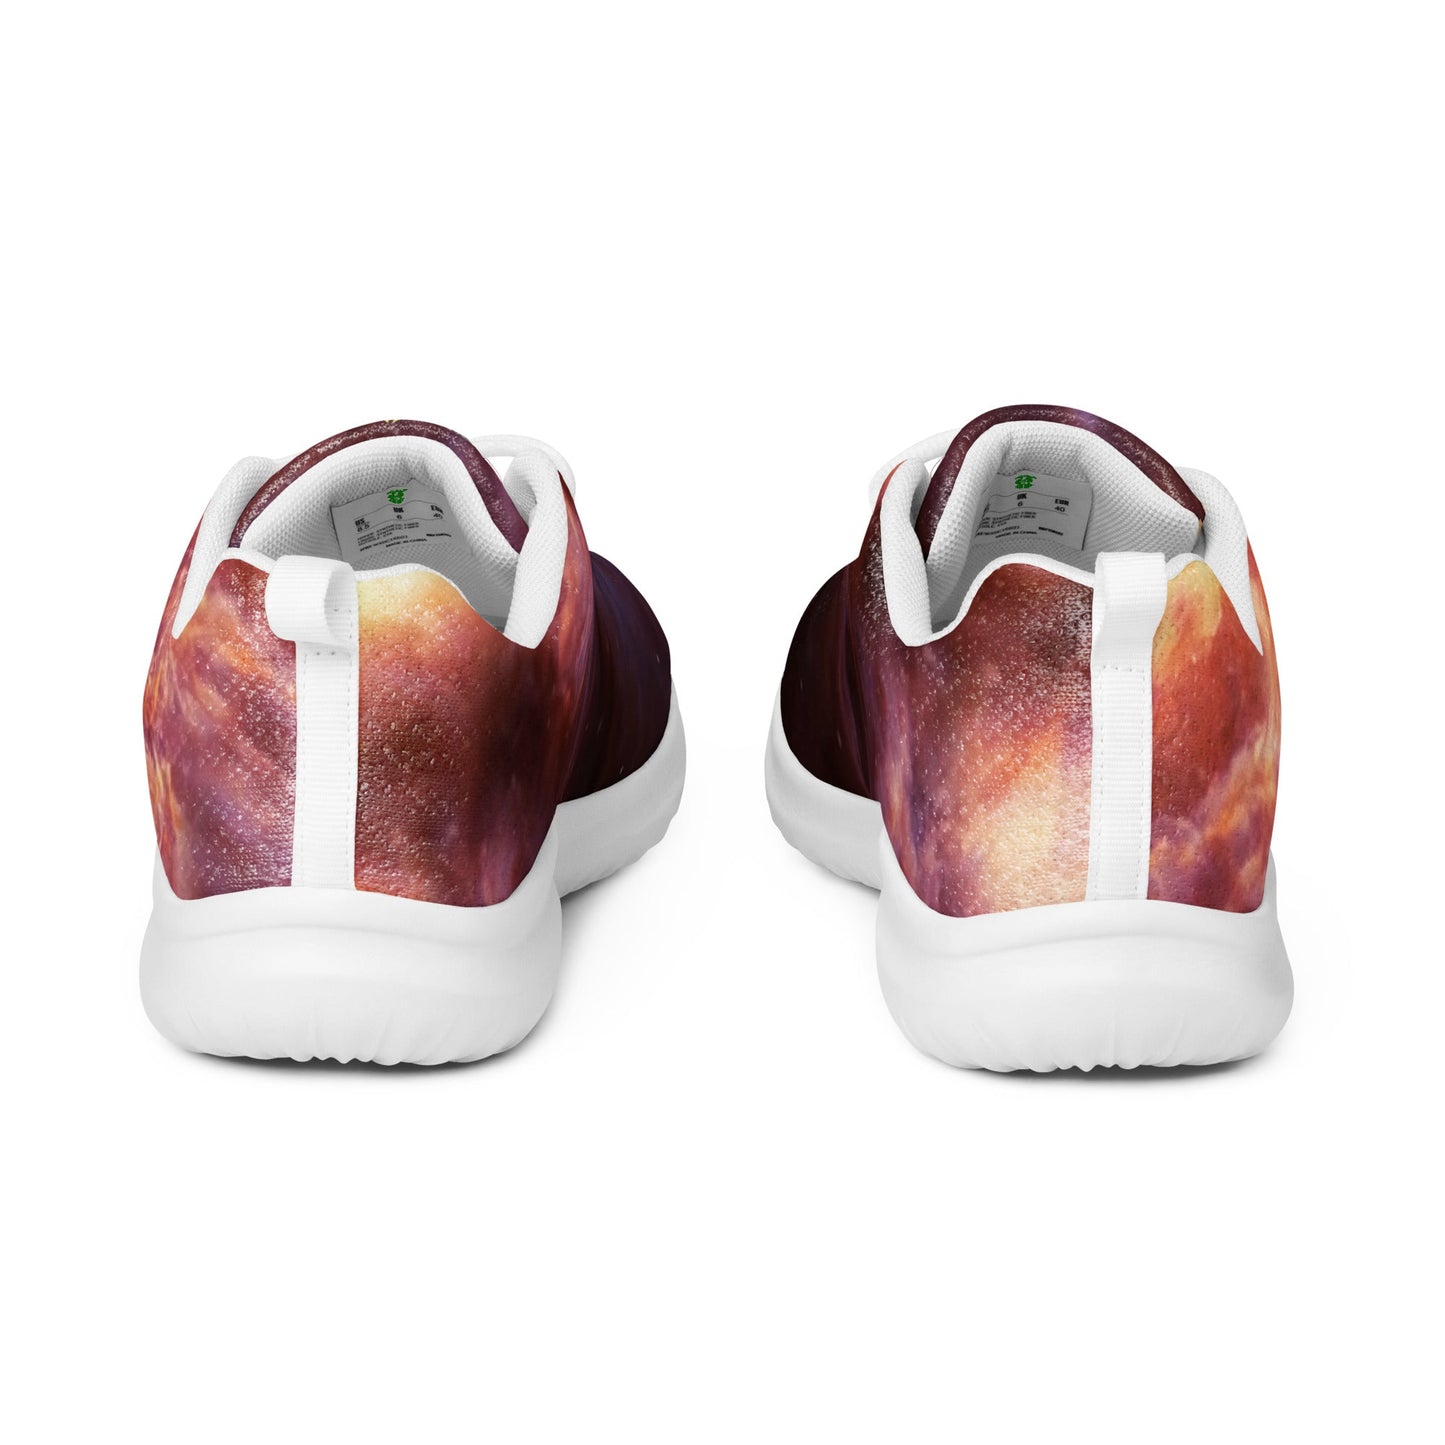 Men’s athletic shoes | Intergalactic Space Force 2 - Spectral Ink Shop - Shoes -6241389_16368